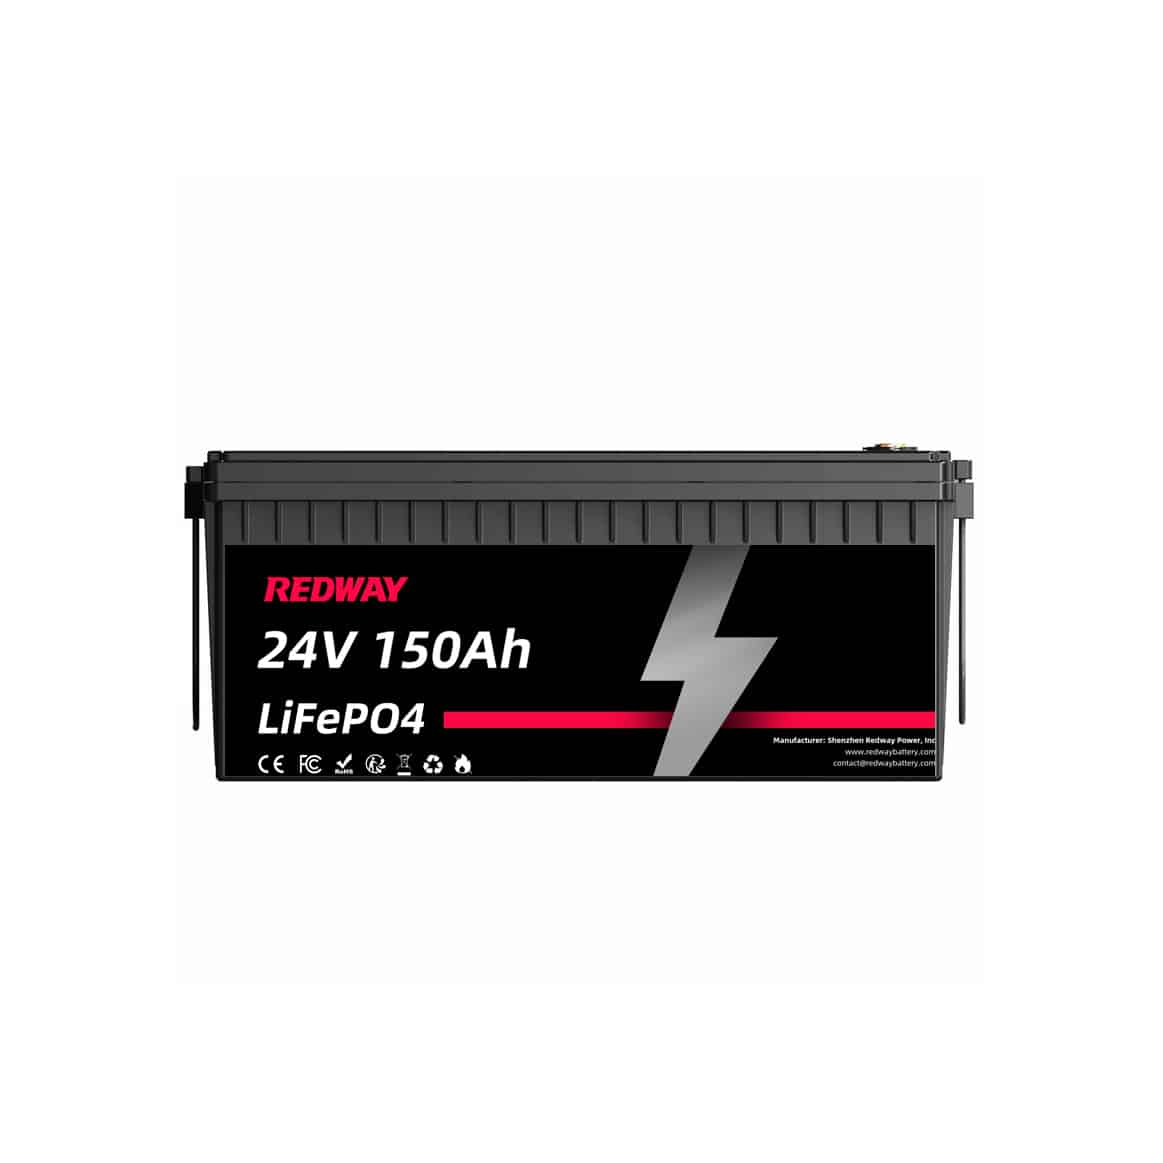 24V 150Ah LiFePO4 Battery Wholesale